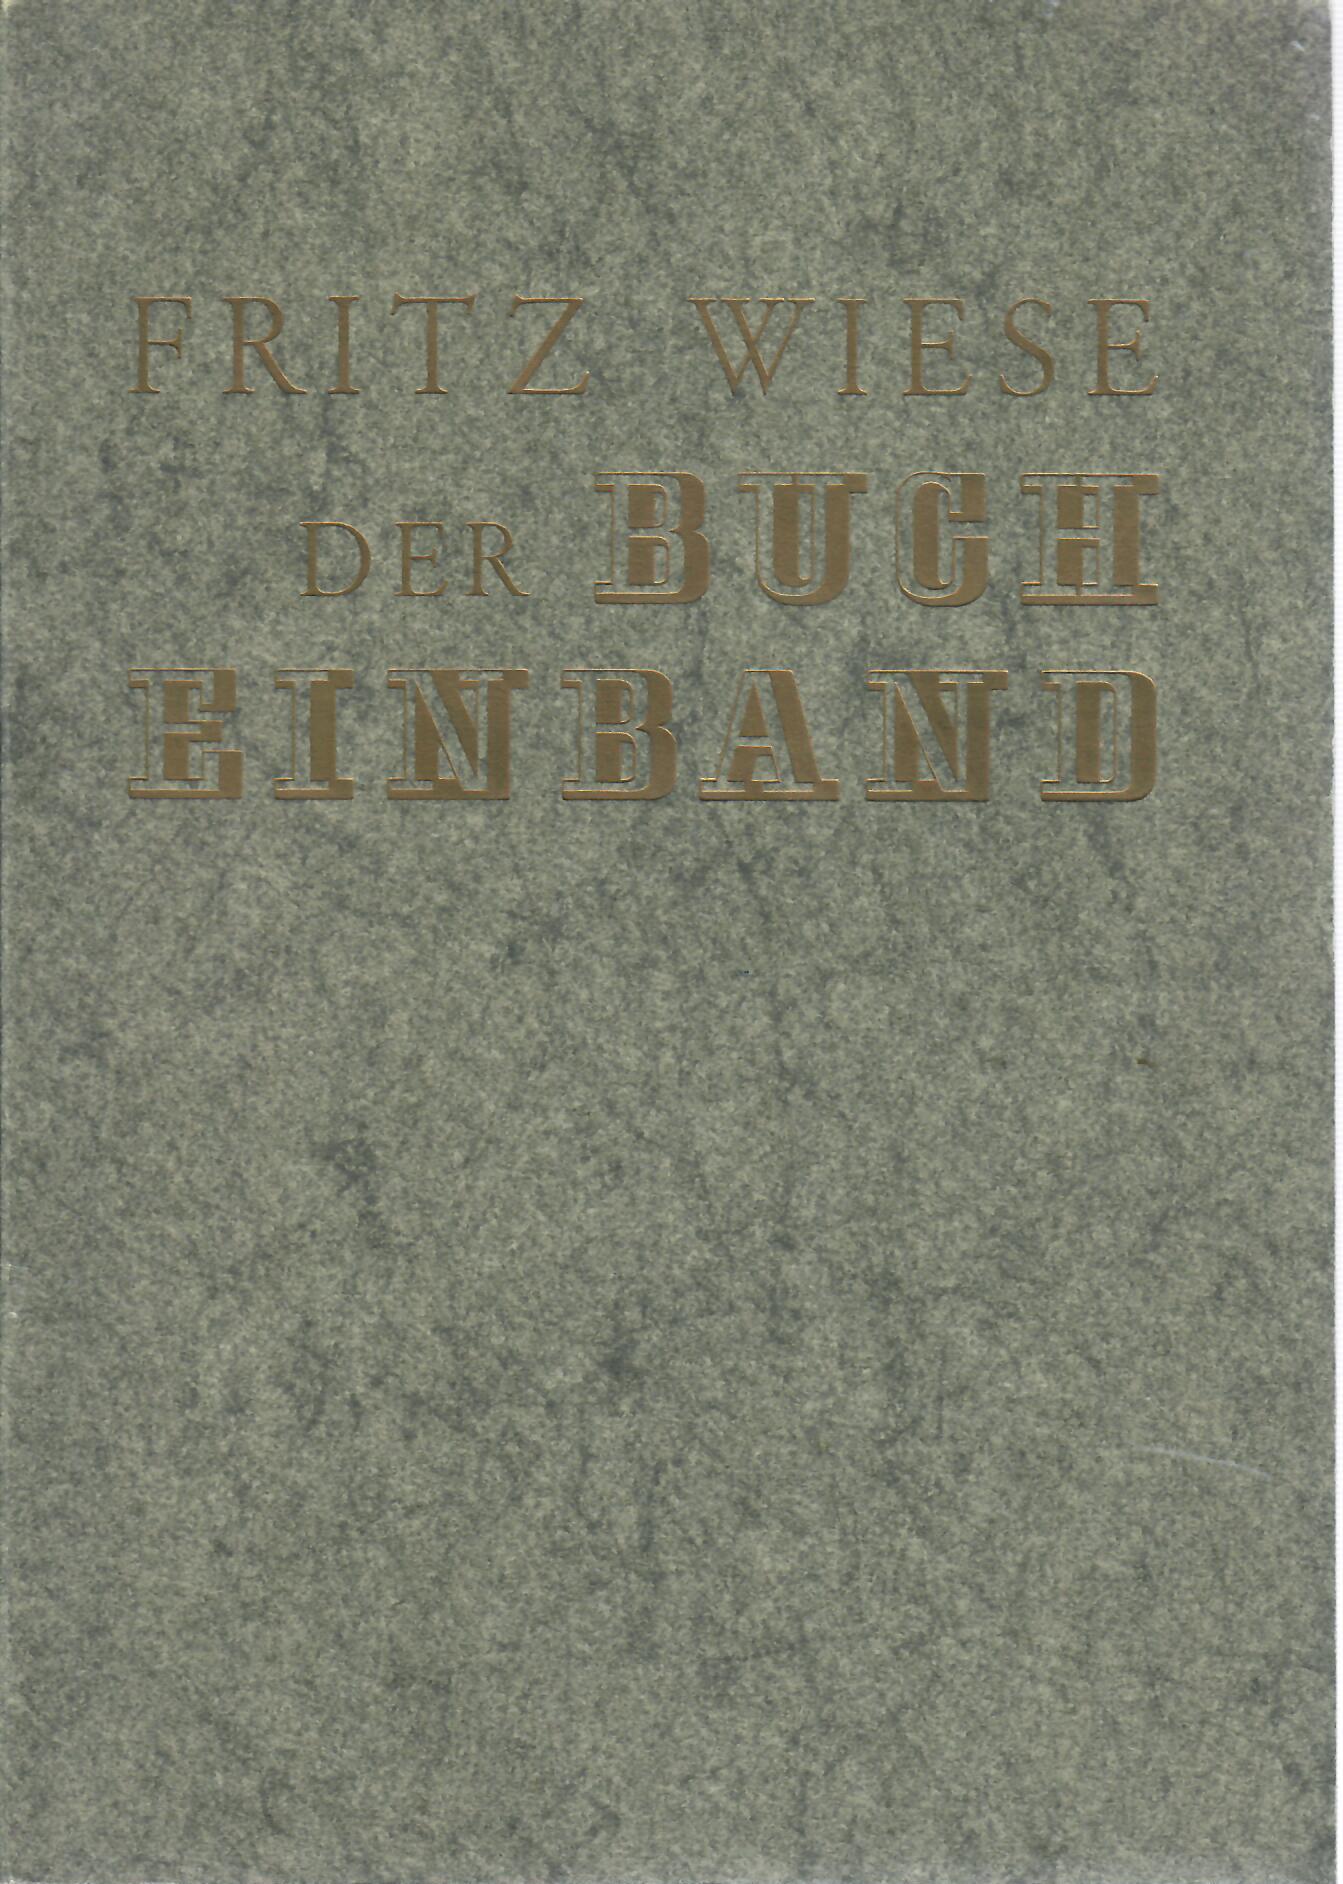 Fritz, Wiese   : Der Bucheinband : Eine Arbeitskunde mit Werkzeichnungen , vierte, durchgesehene Auflage : Max Hettler Verlag Stuttgart 1964 :